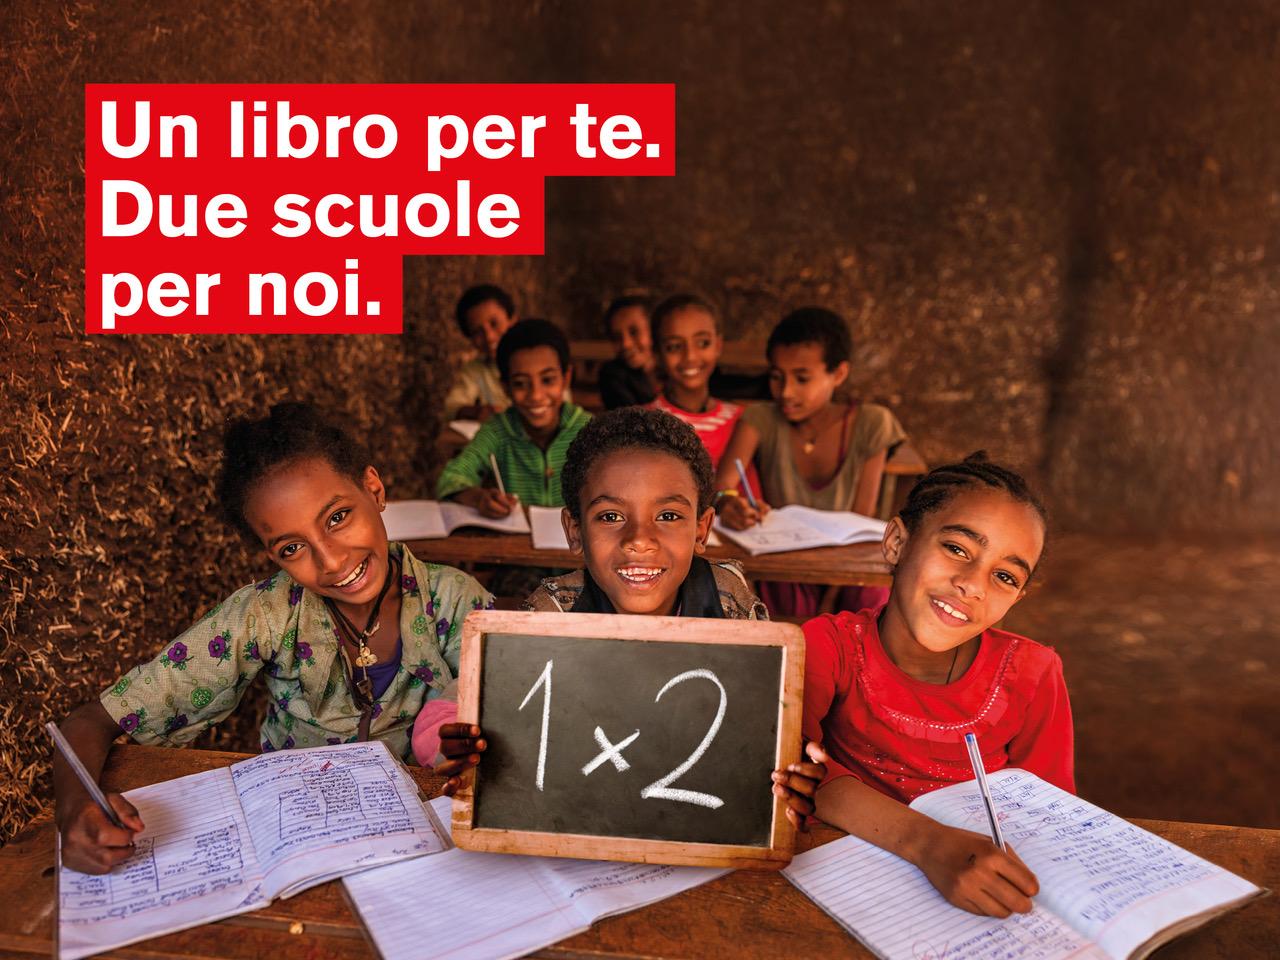 Il Gruppo Mondadori e ActionAid insieme per l’istruzione